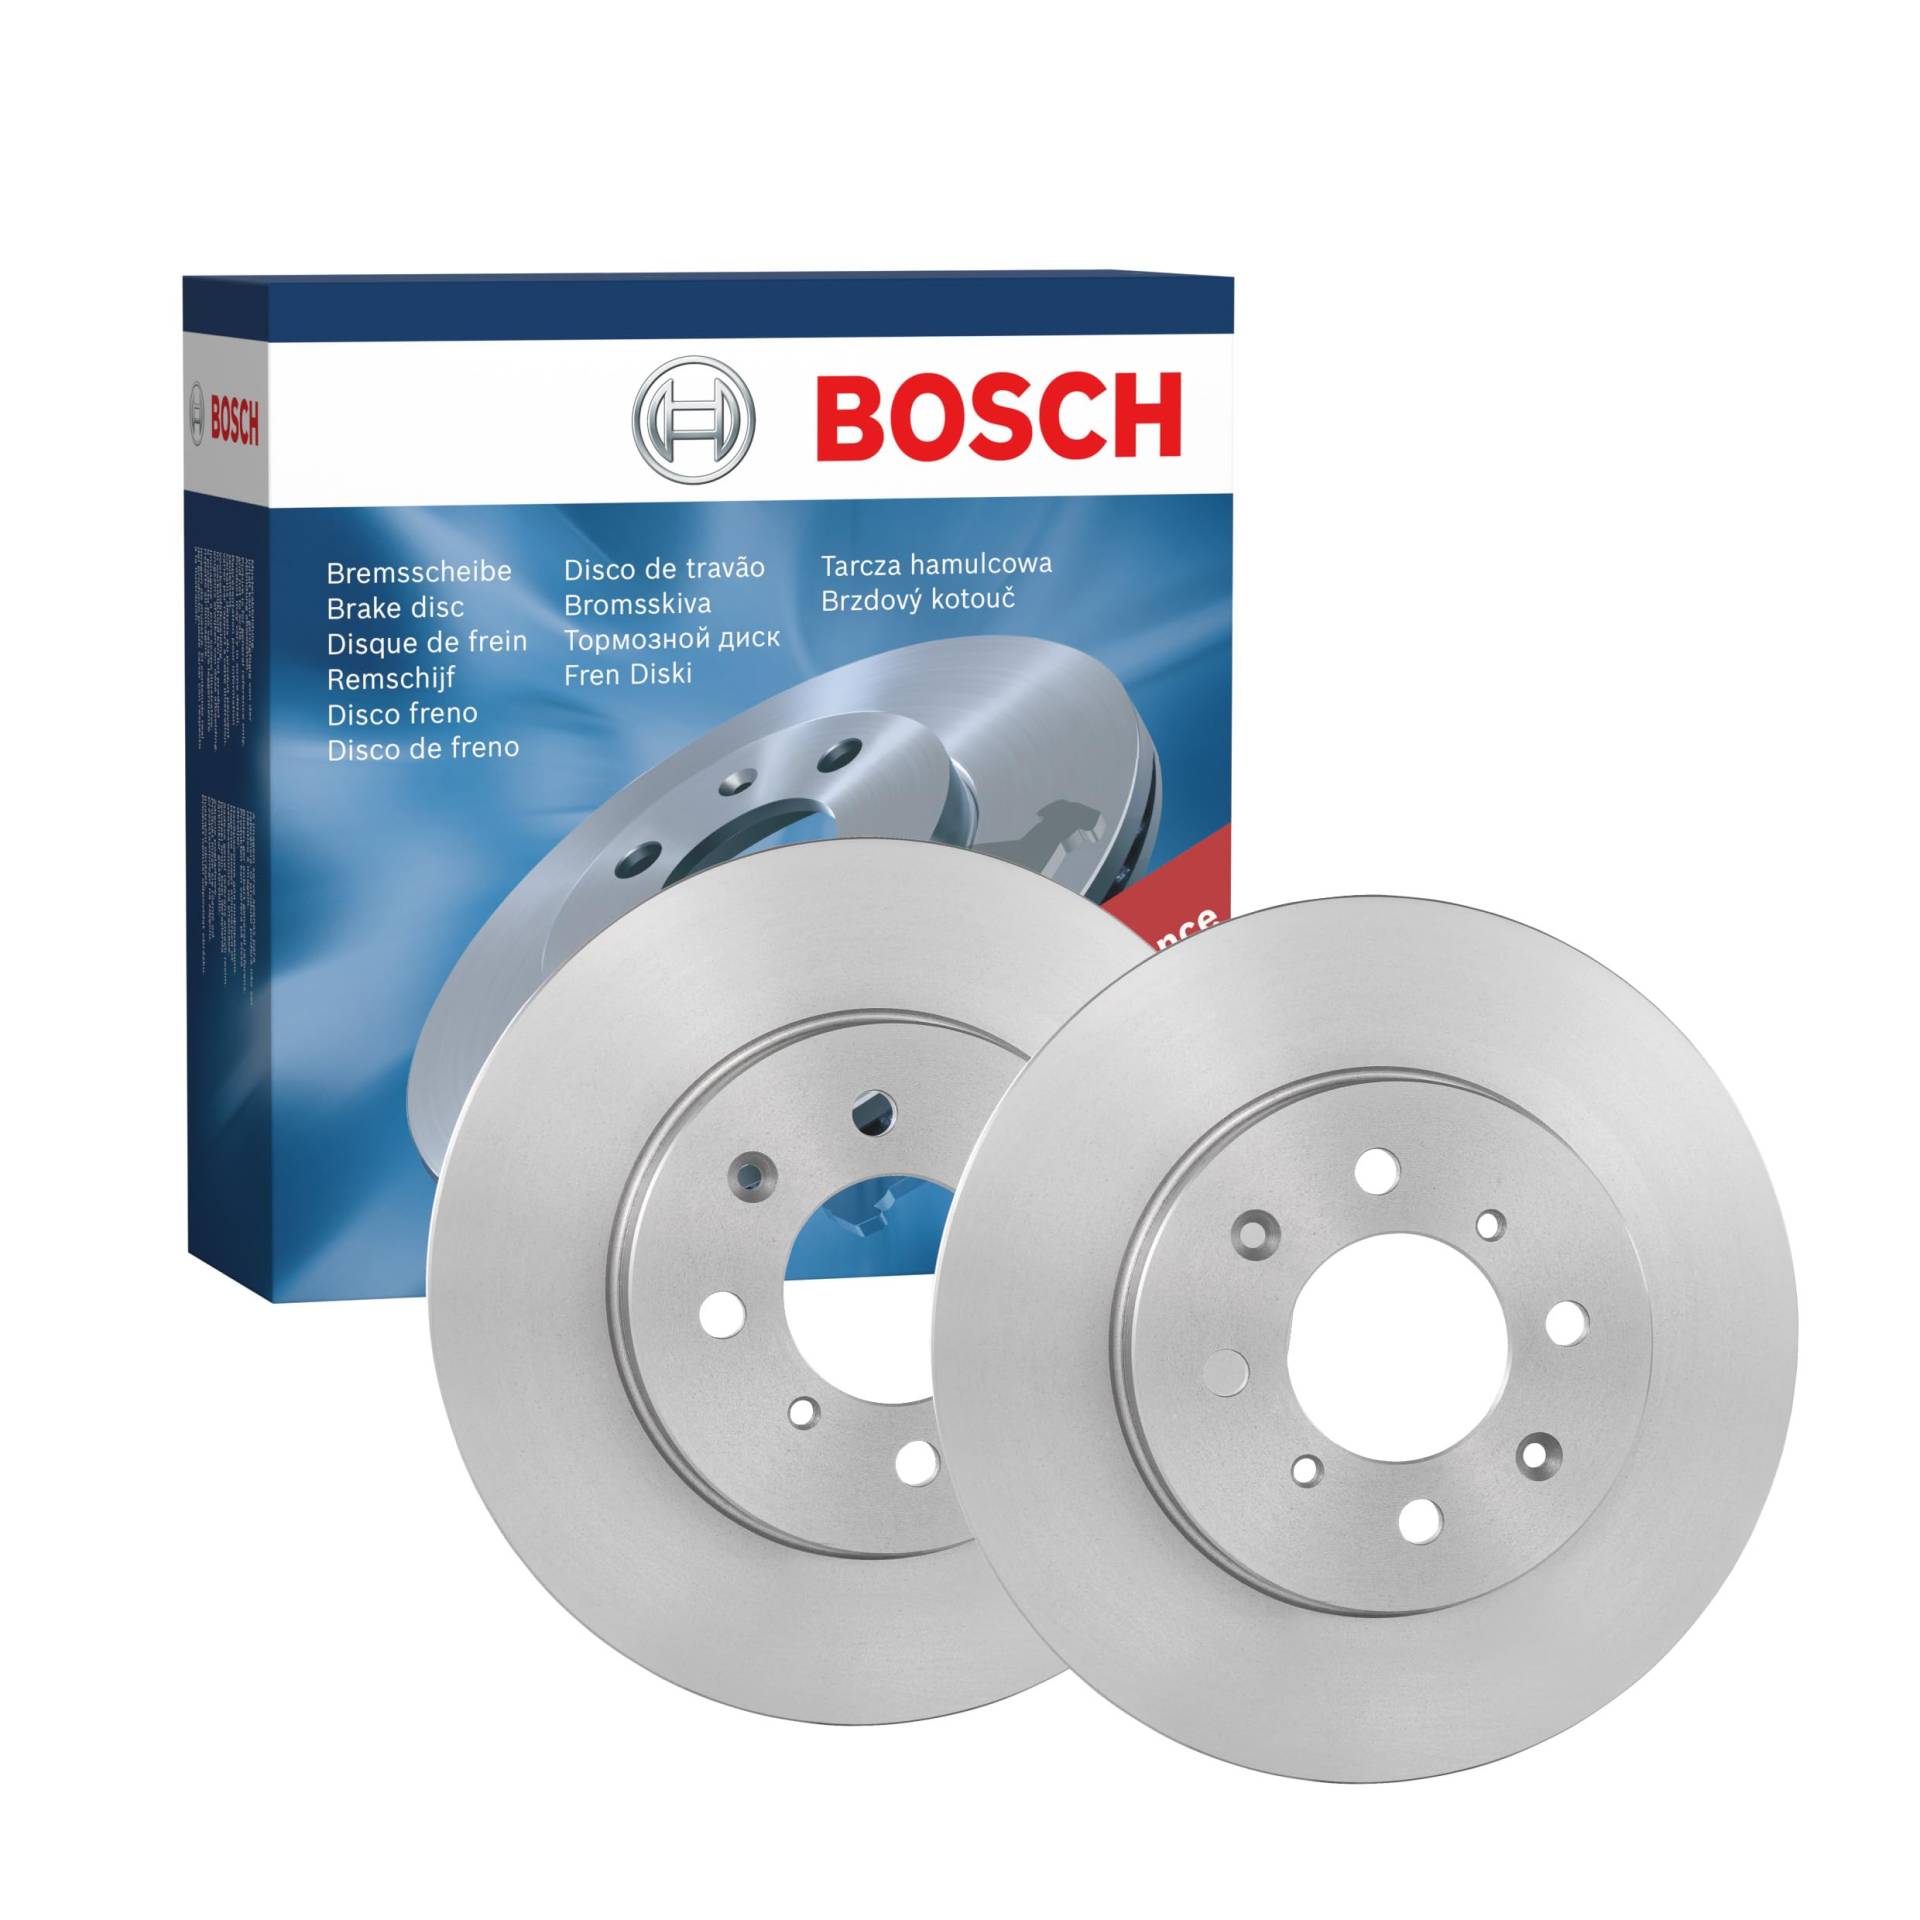 Bosch BD1437 Bremsscheiben - Vorderachse - ECE-R90 Zertifizierung - zwei Bremsscheiben pro Set von Bosch Automotive